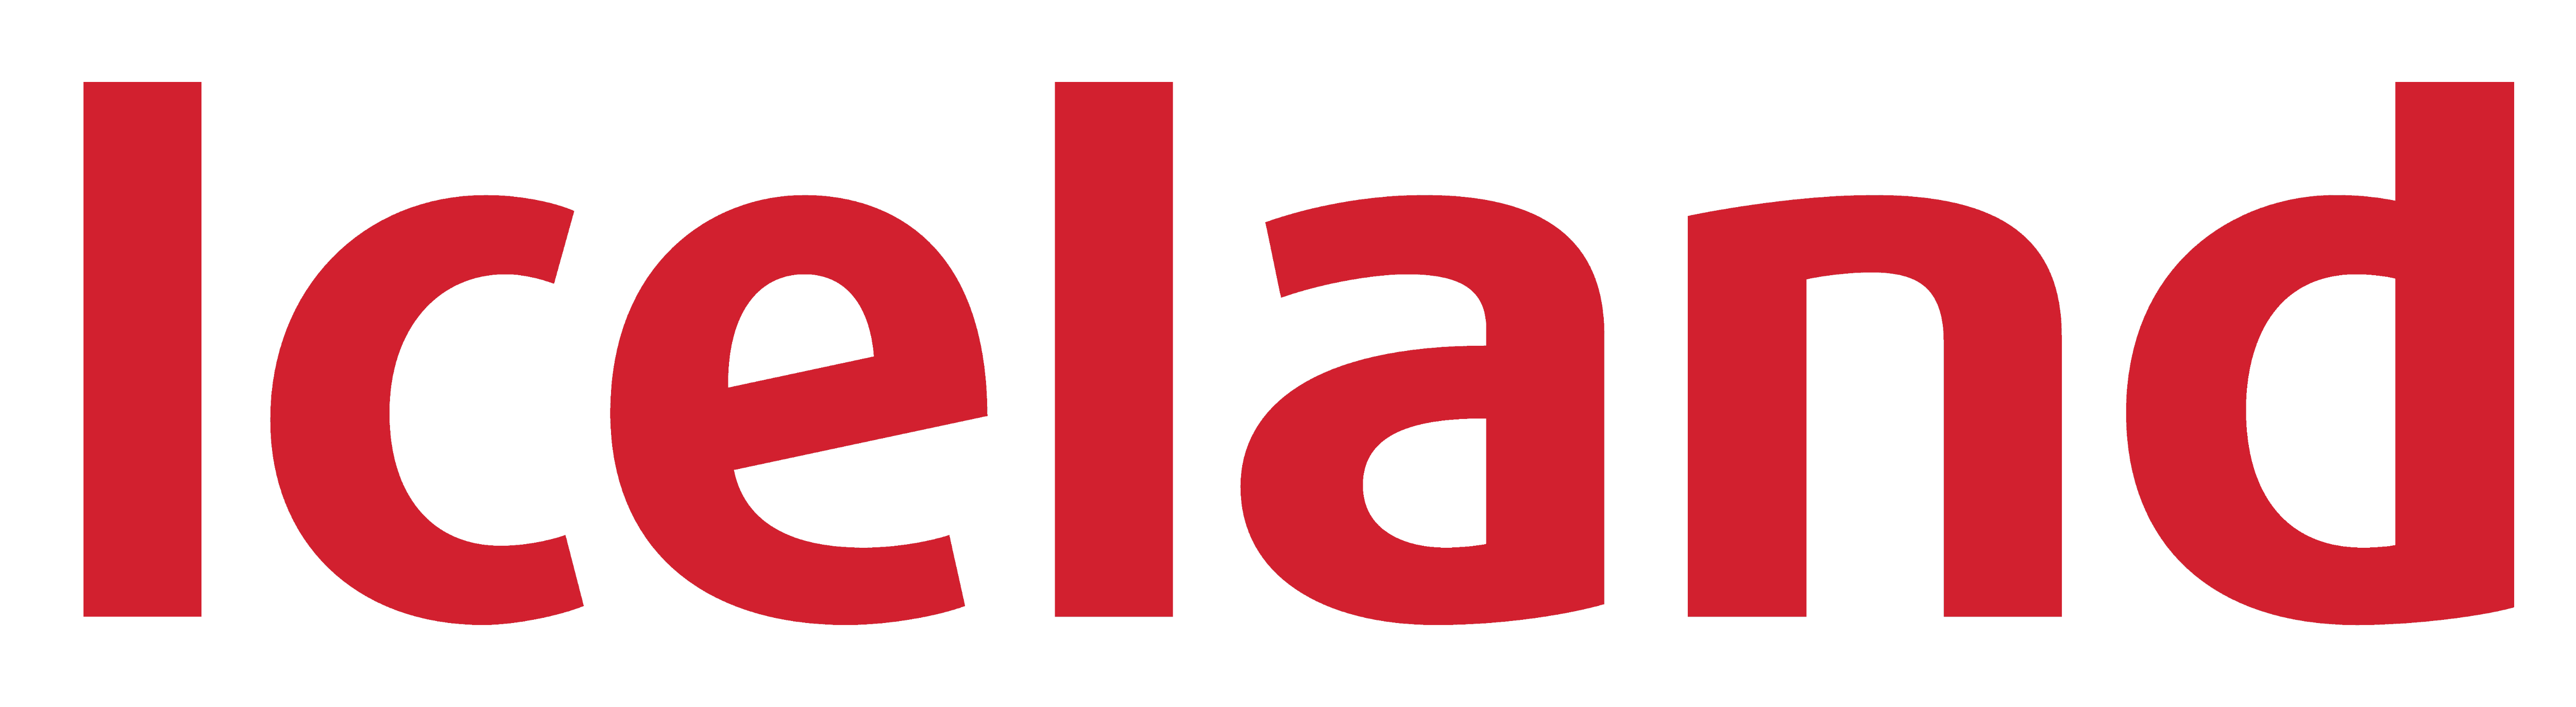 Iceland Logo - Iceland (supermarket)